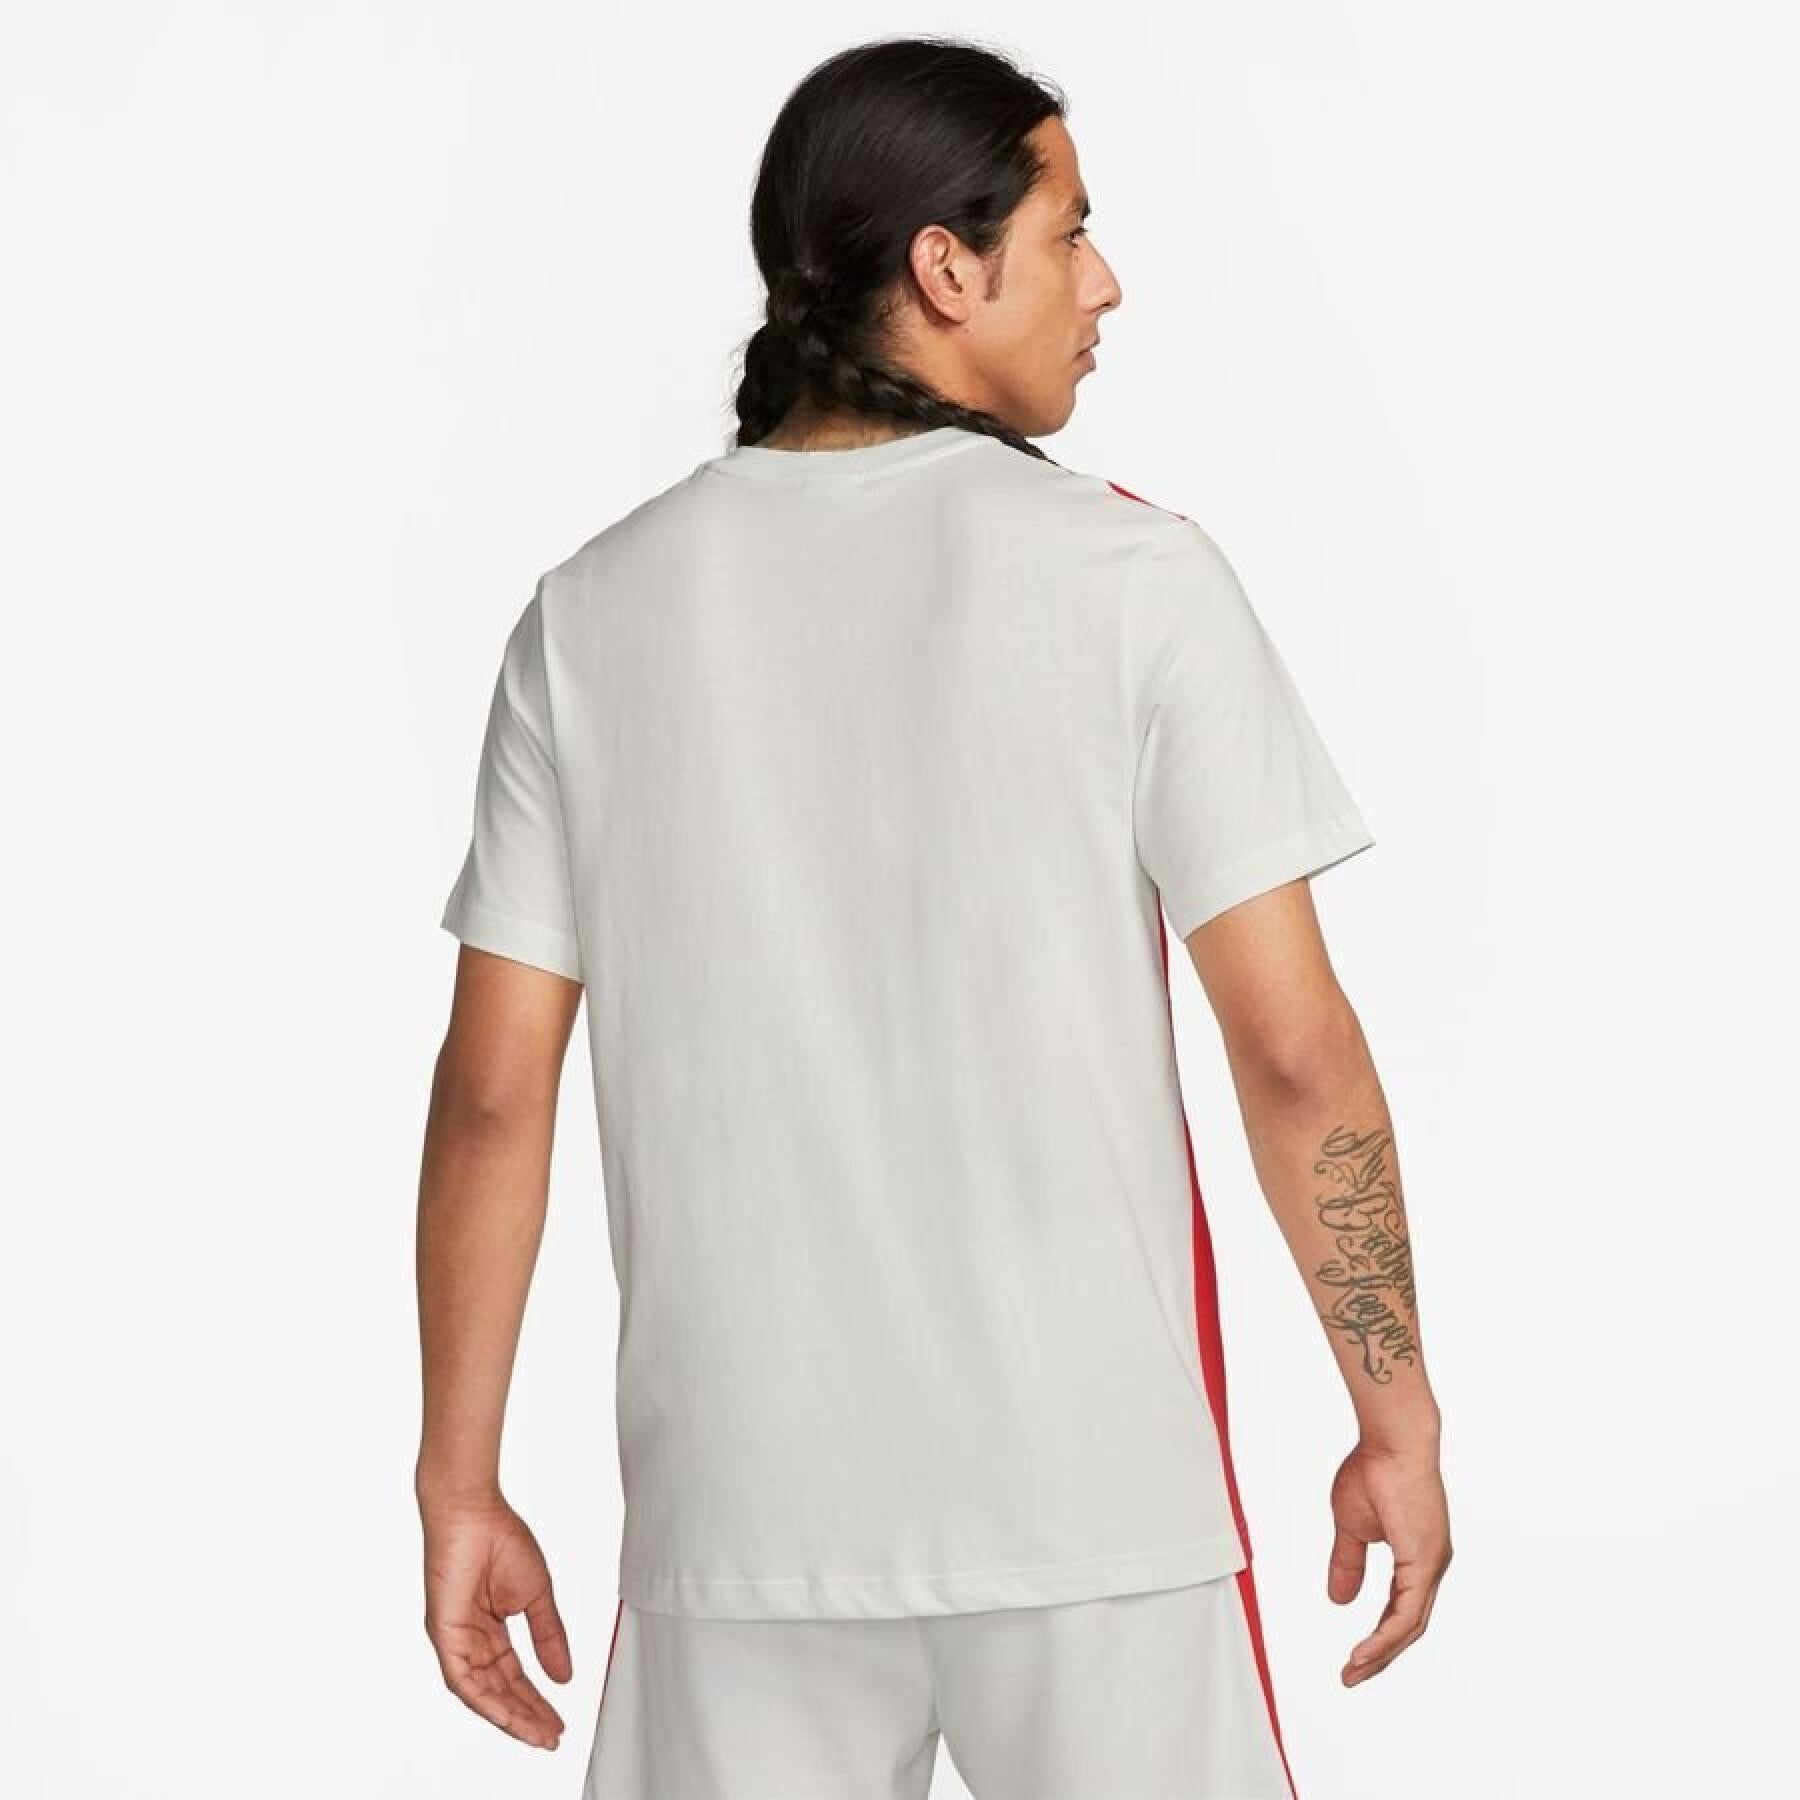 Nike Air T-shirt - White/Red